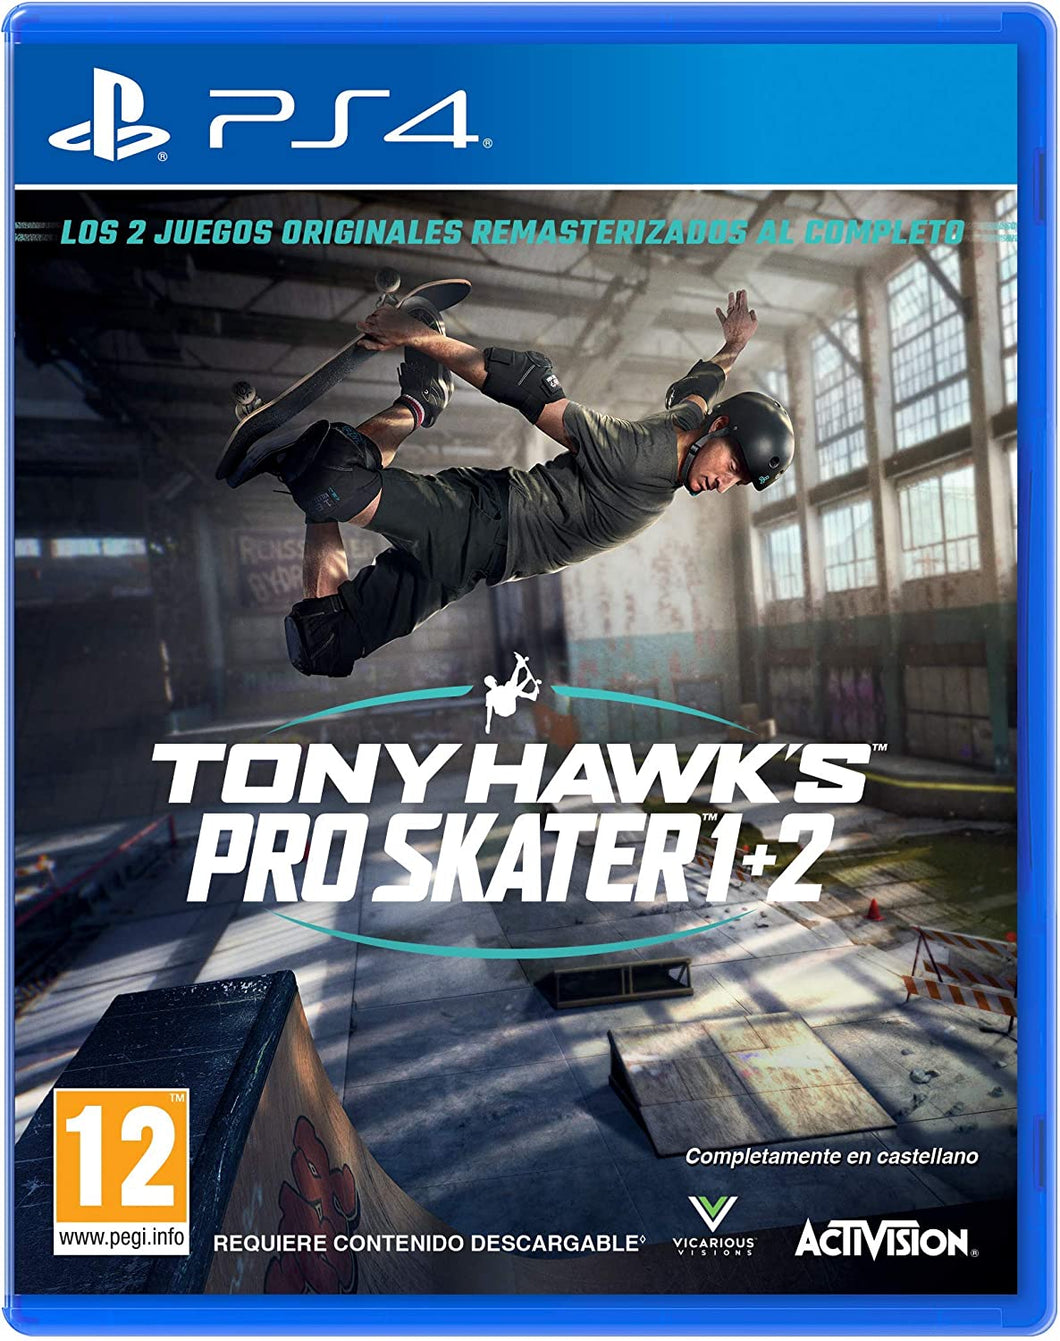 SONY PS4 GAME TONY HAWK'S PRO SKATER 1+2